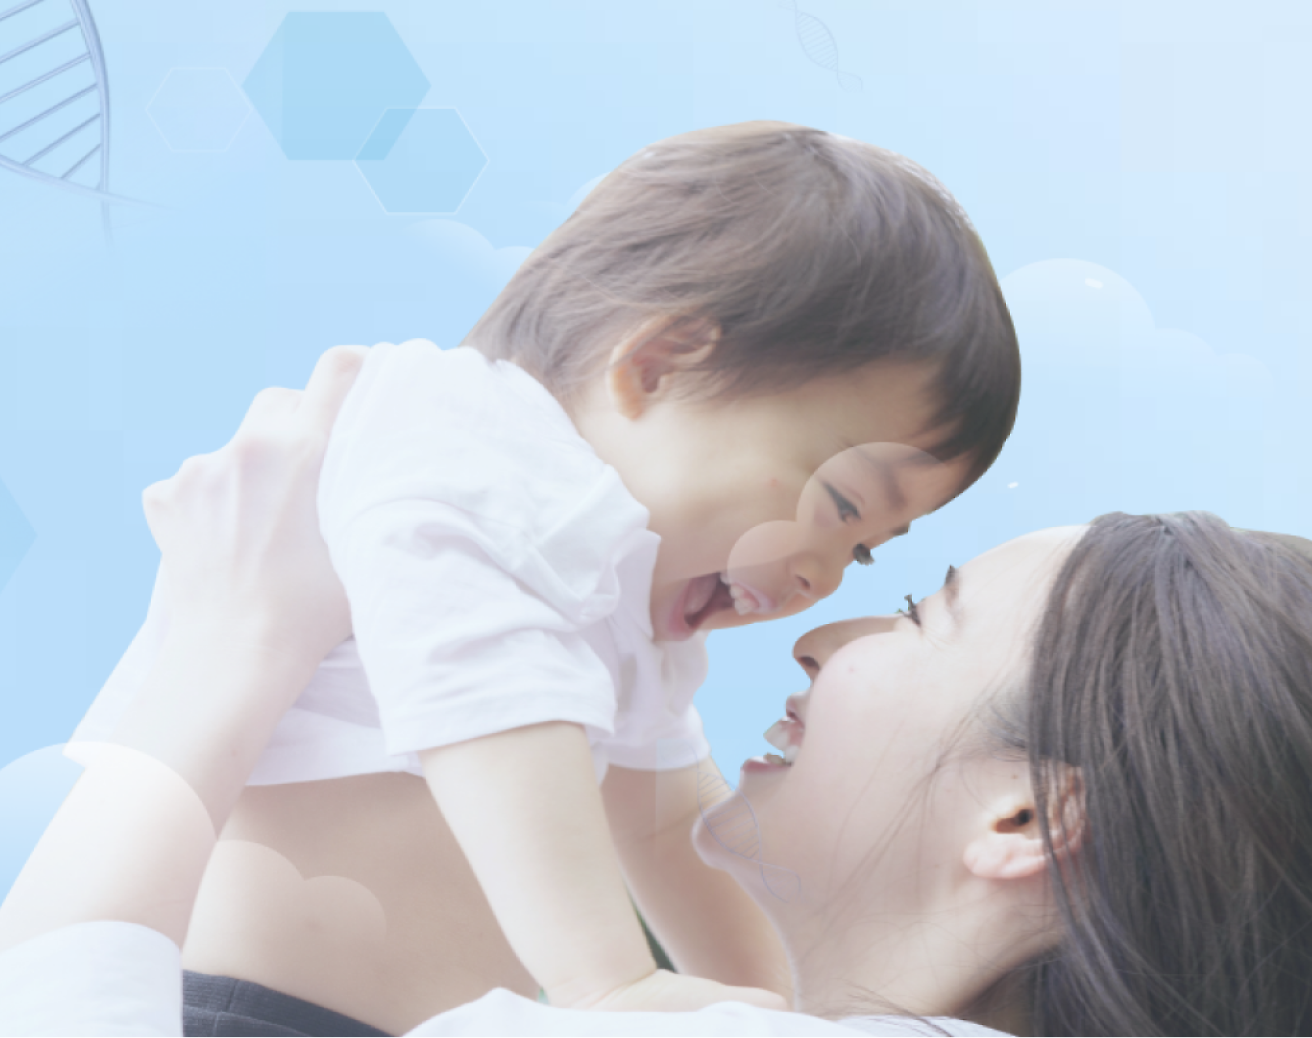 Et glad lite barn som blir holdt opp i luften av sin mor, begge smiler mot en myk blå bakgrunn med lys grafikk.